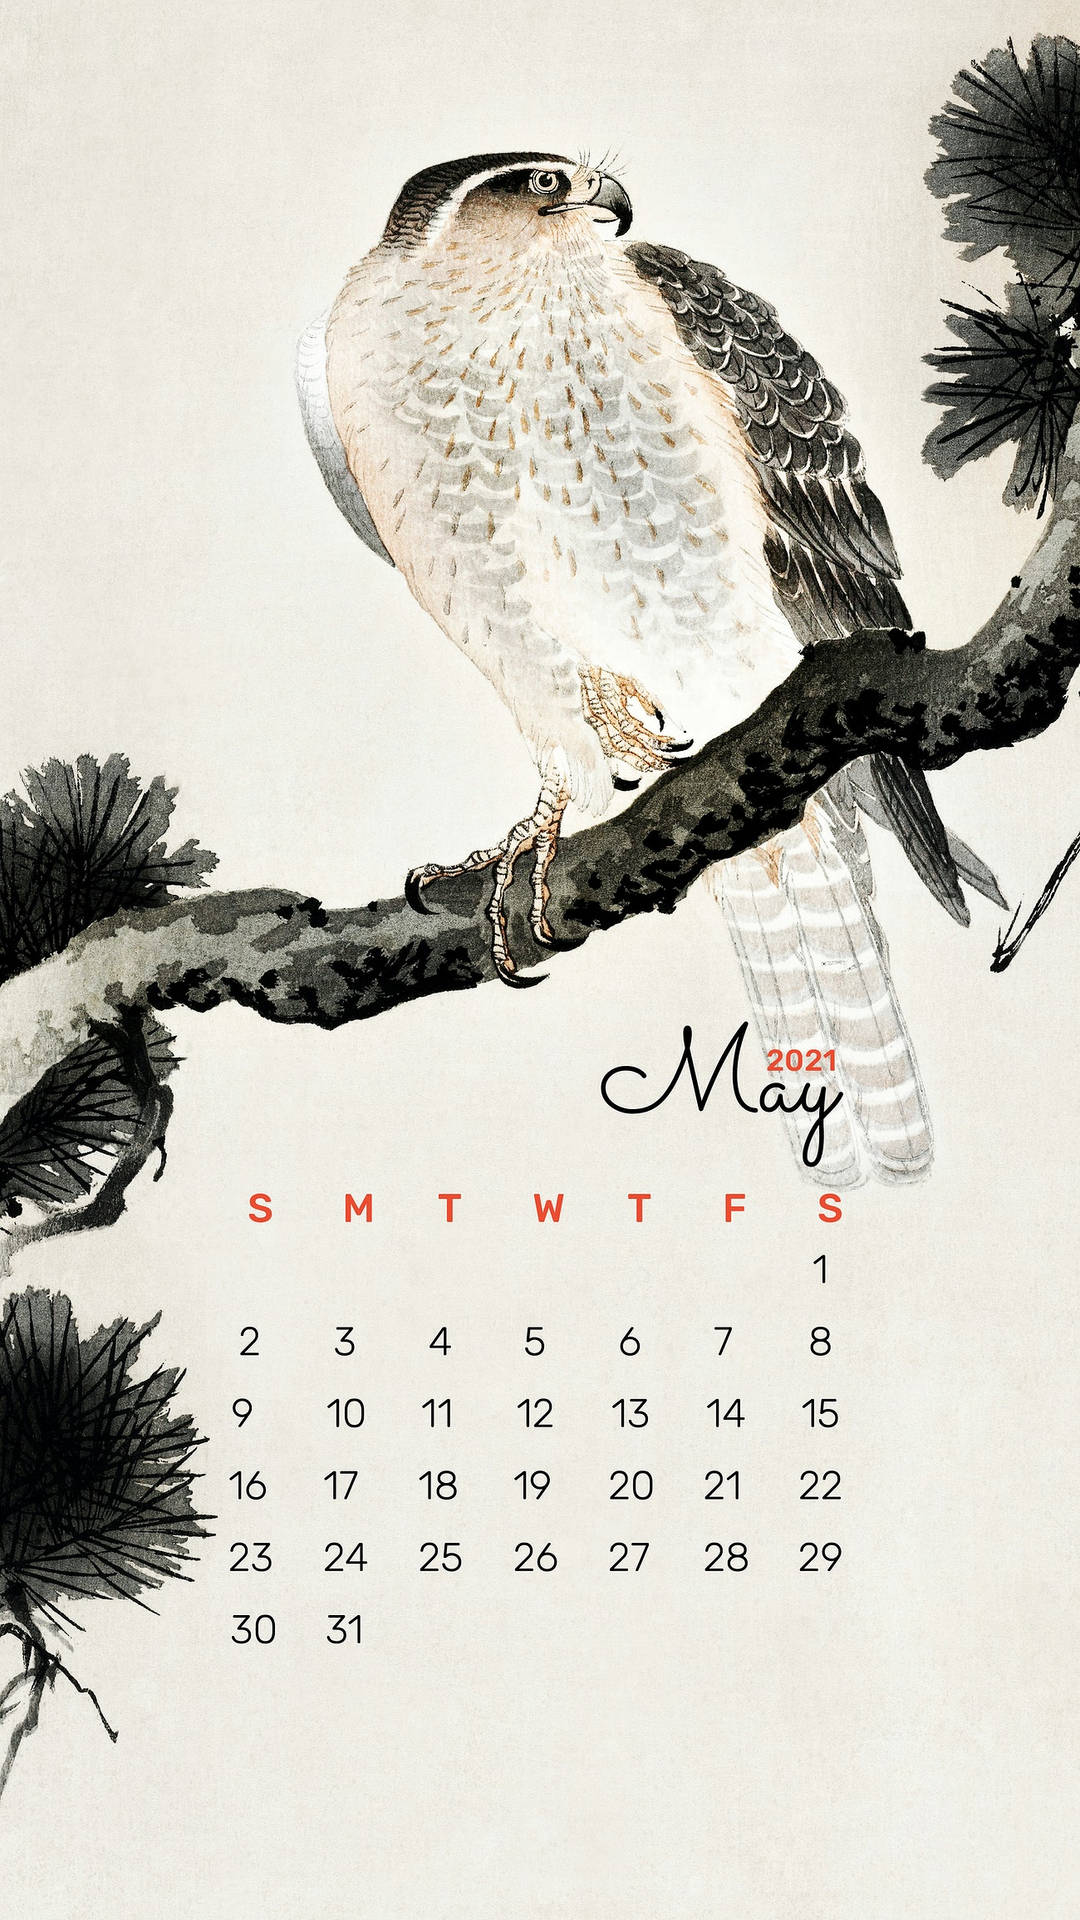 Bird Painting May Calendar 2021